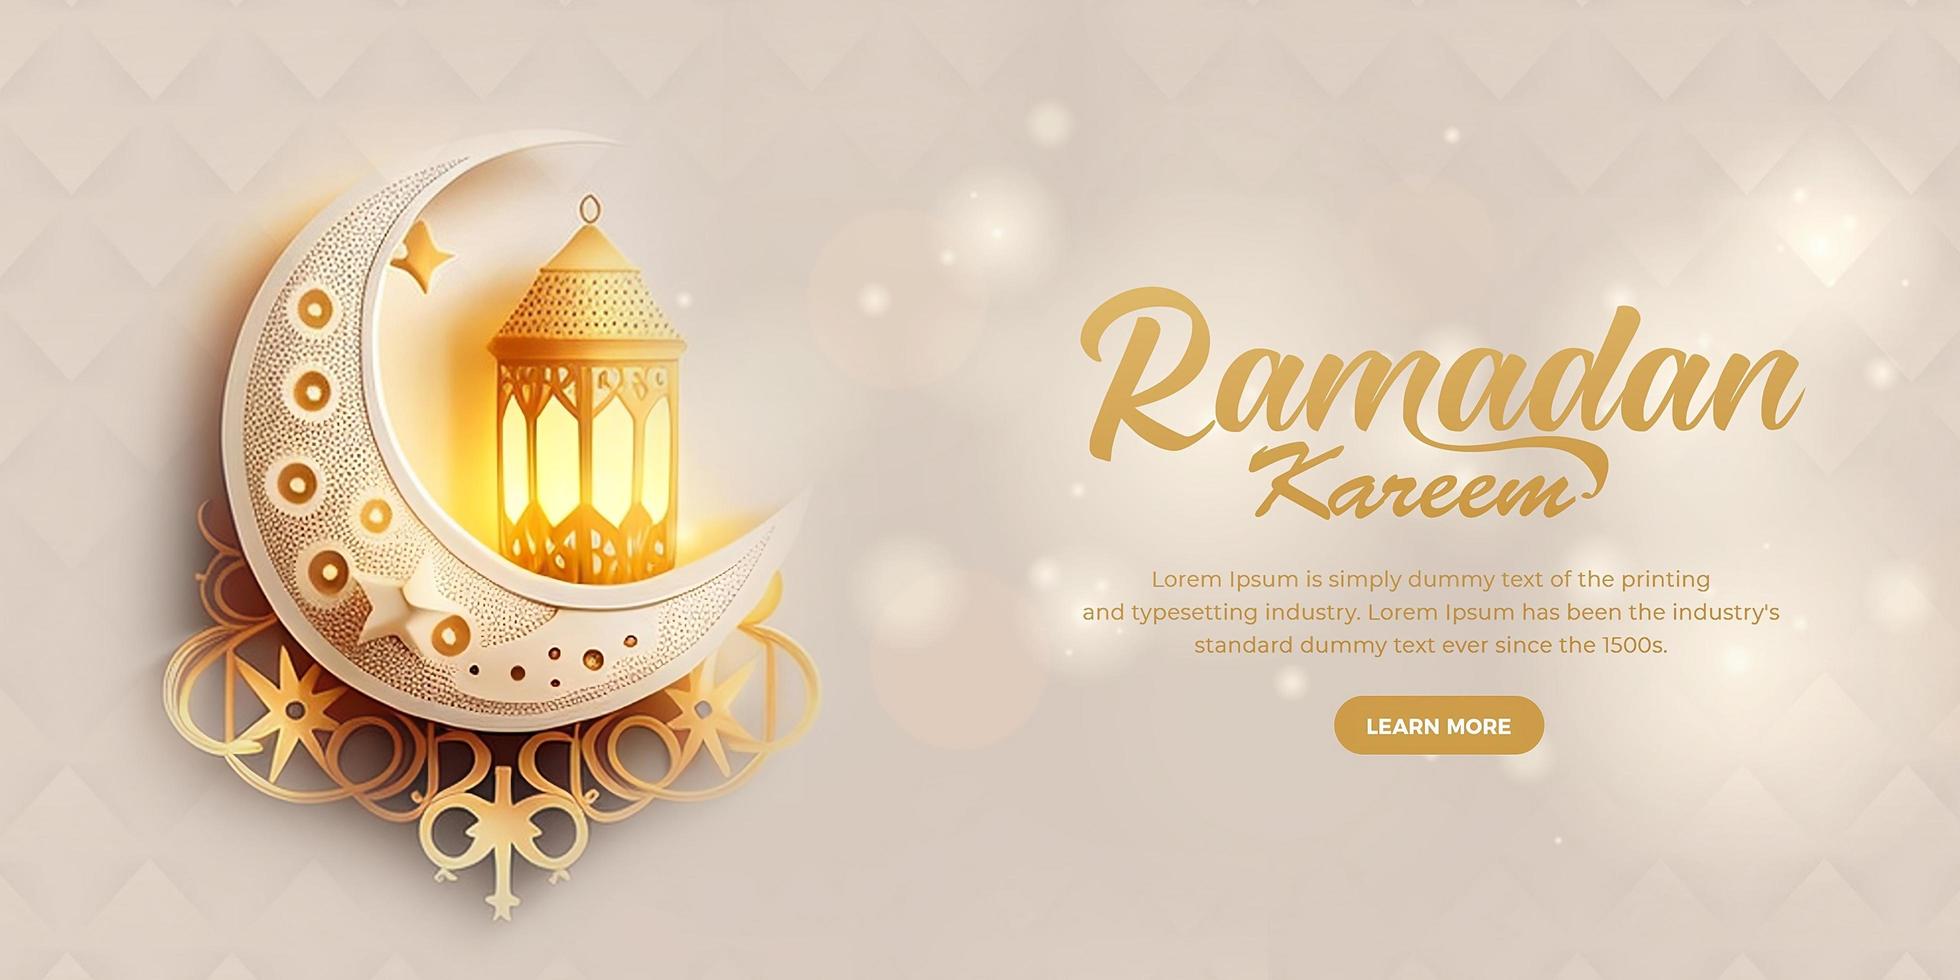 Ramadan kareem Arabo islamico elegante lusso ornamentale sfondo con islamico modello. foto